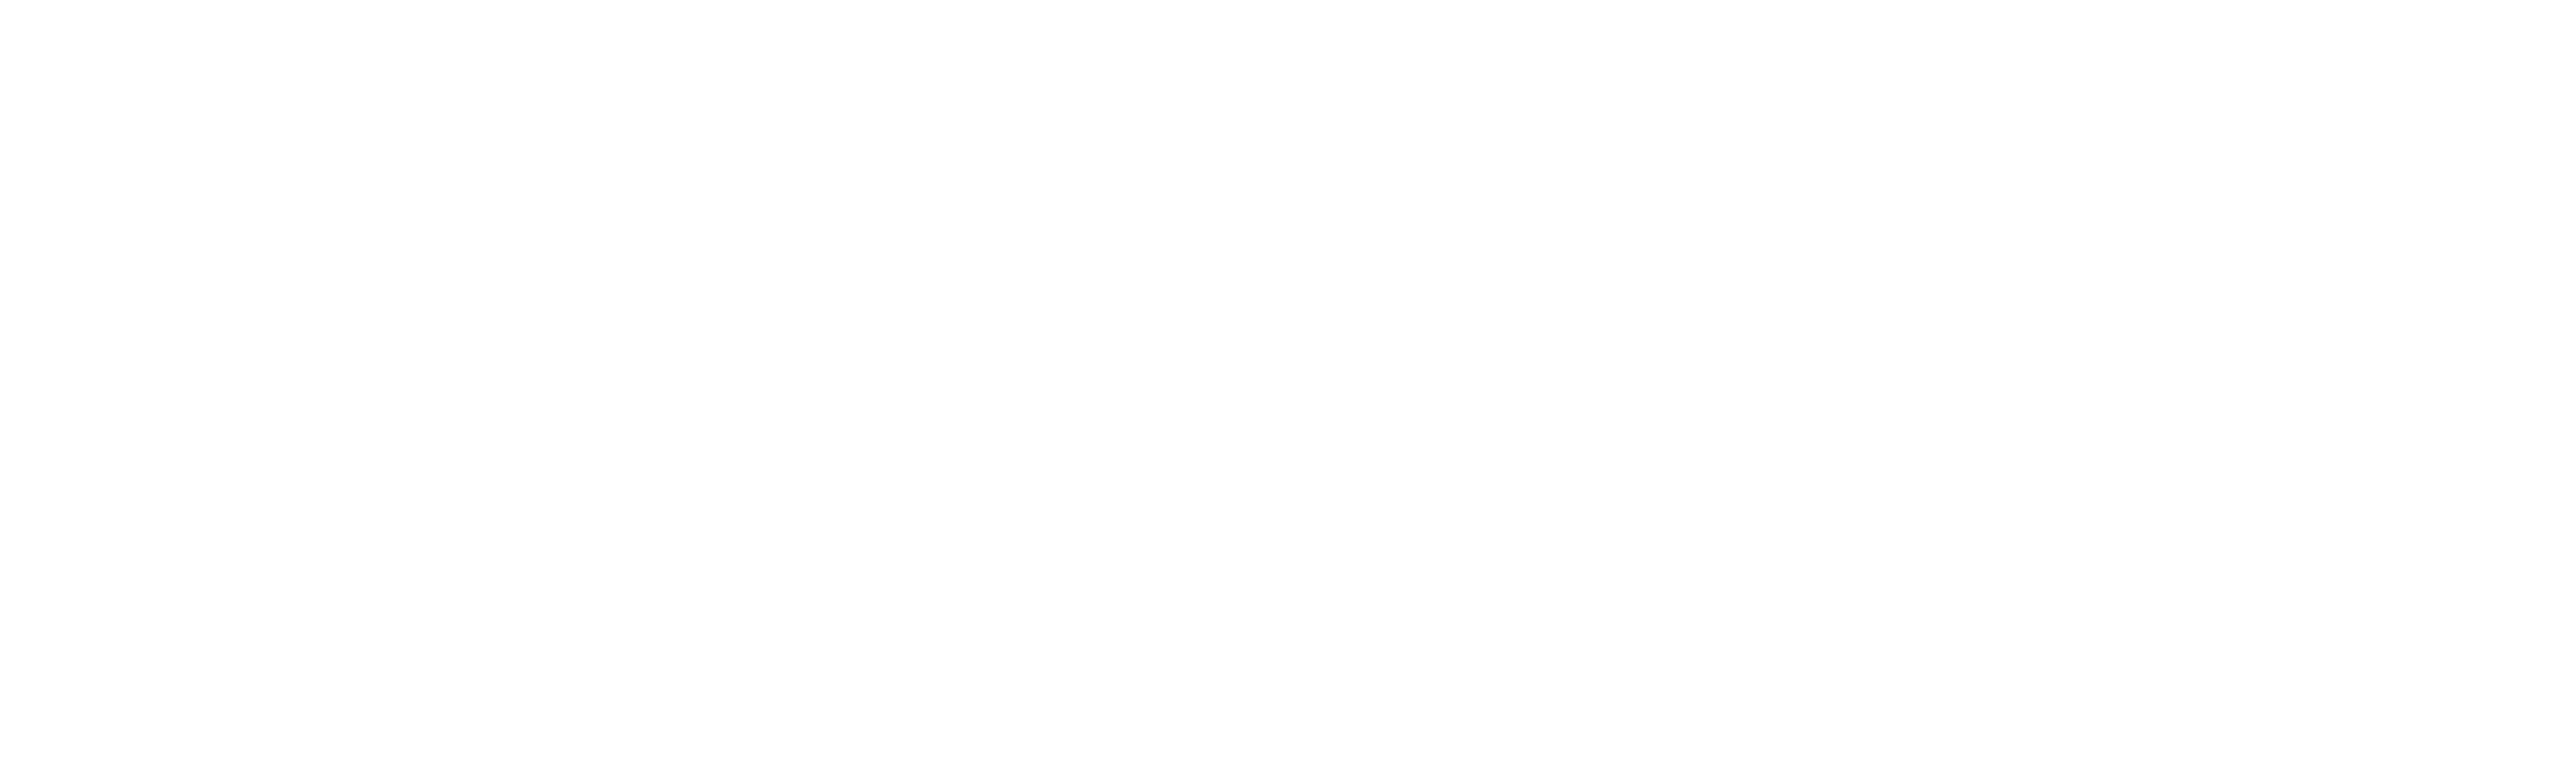 C.Hamilton Images